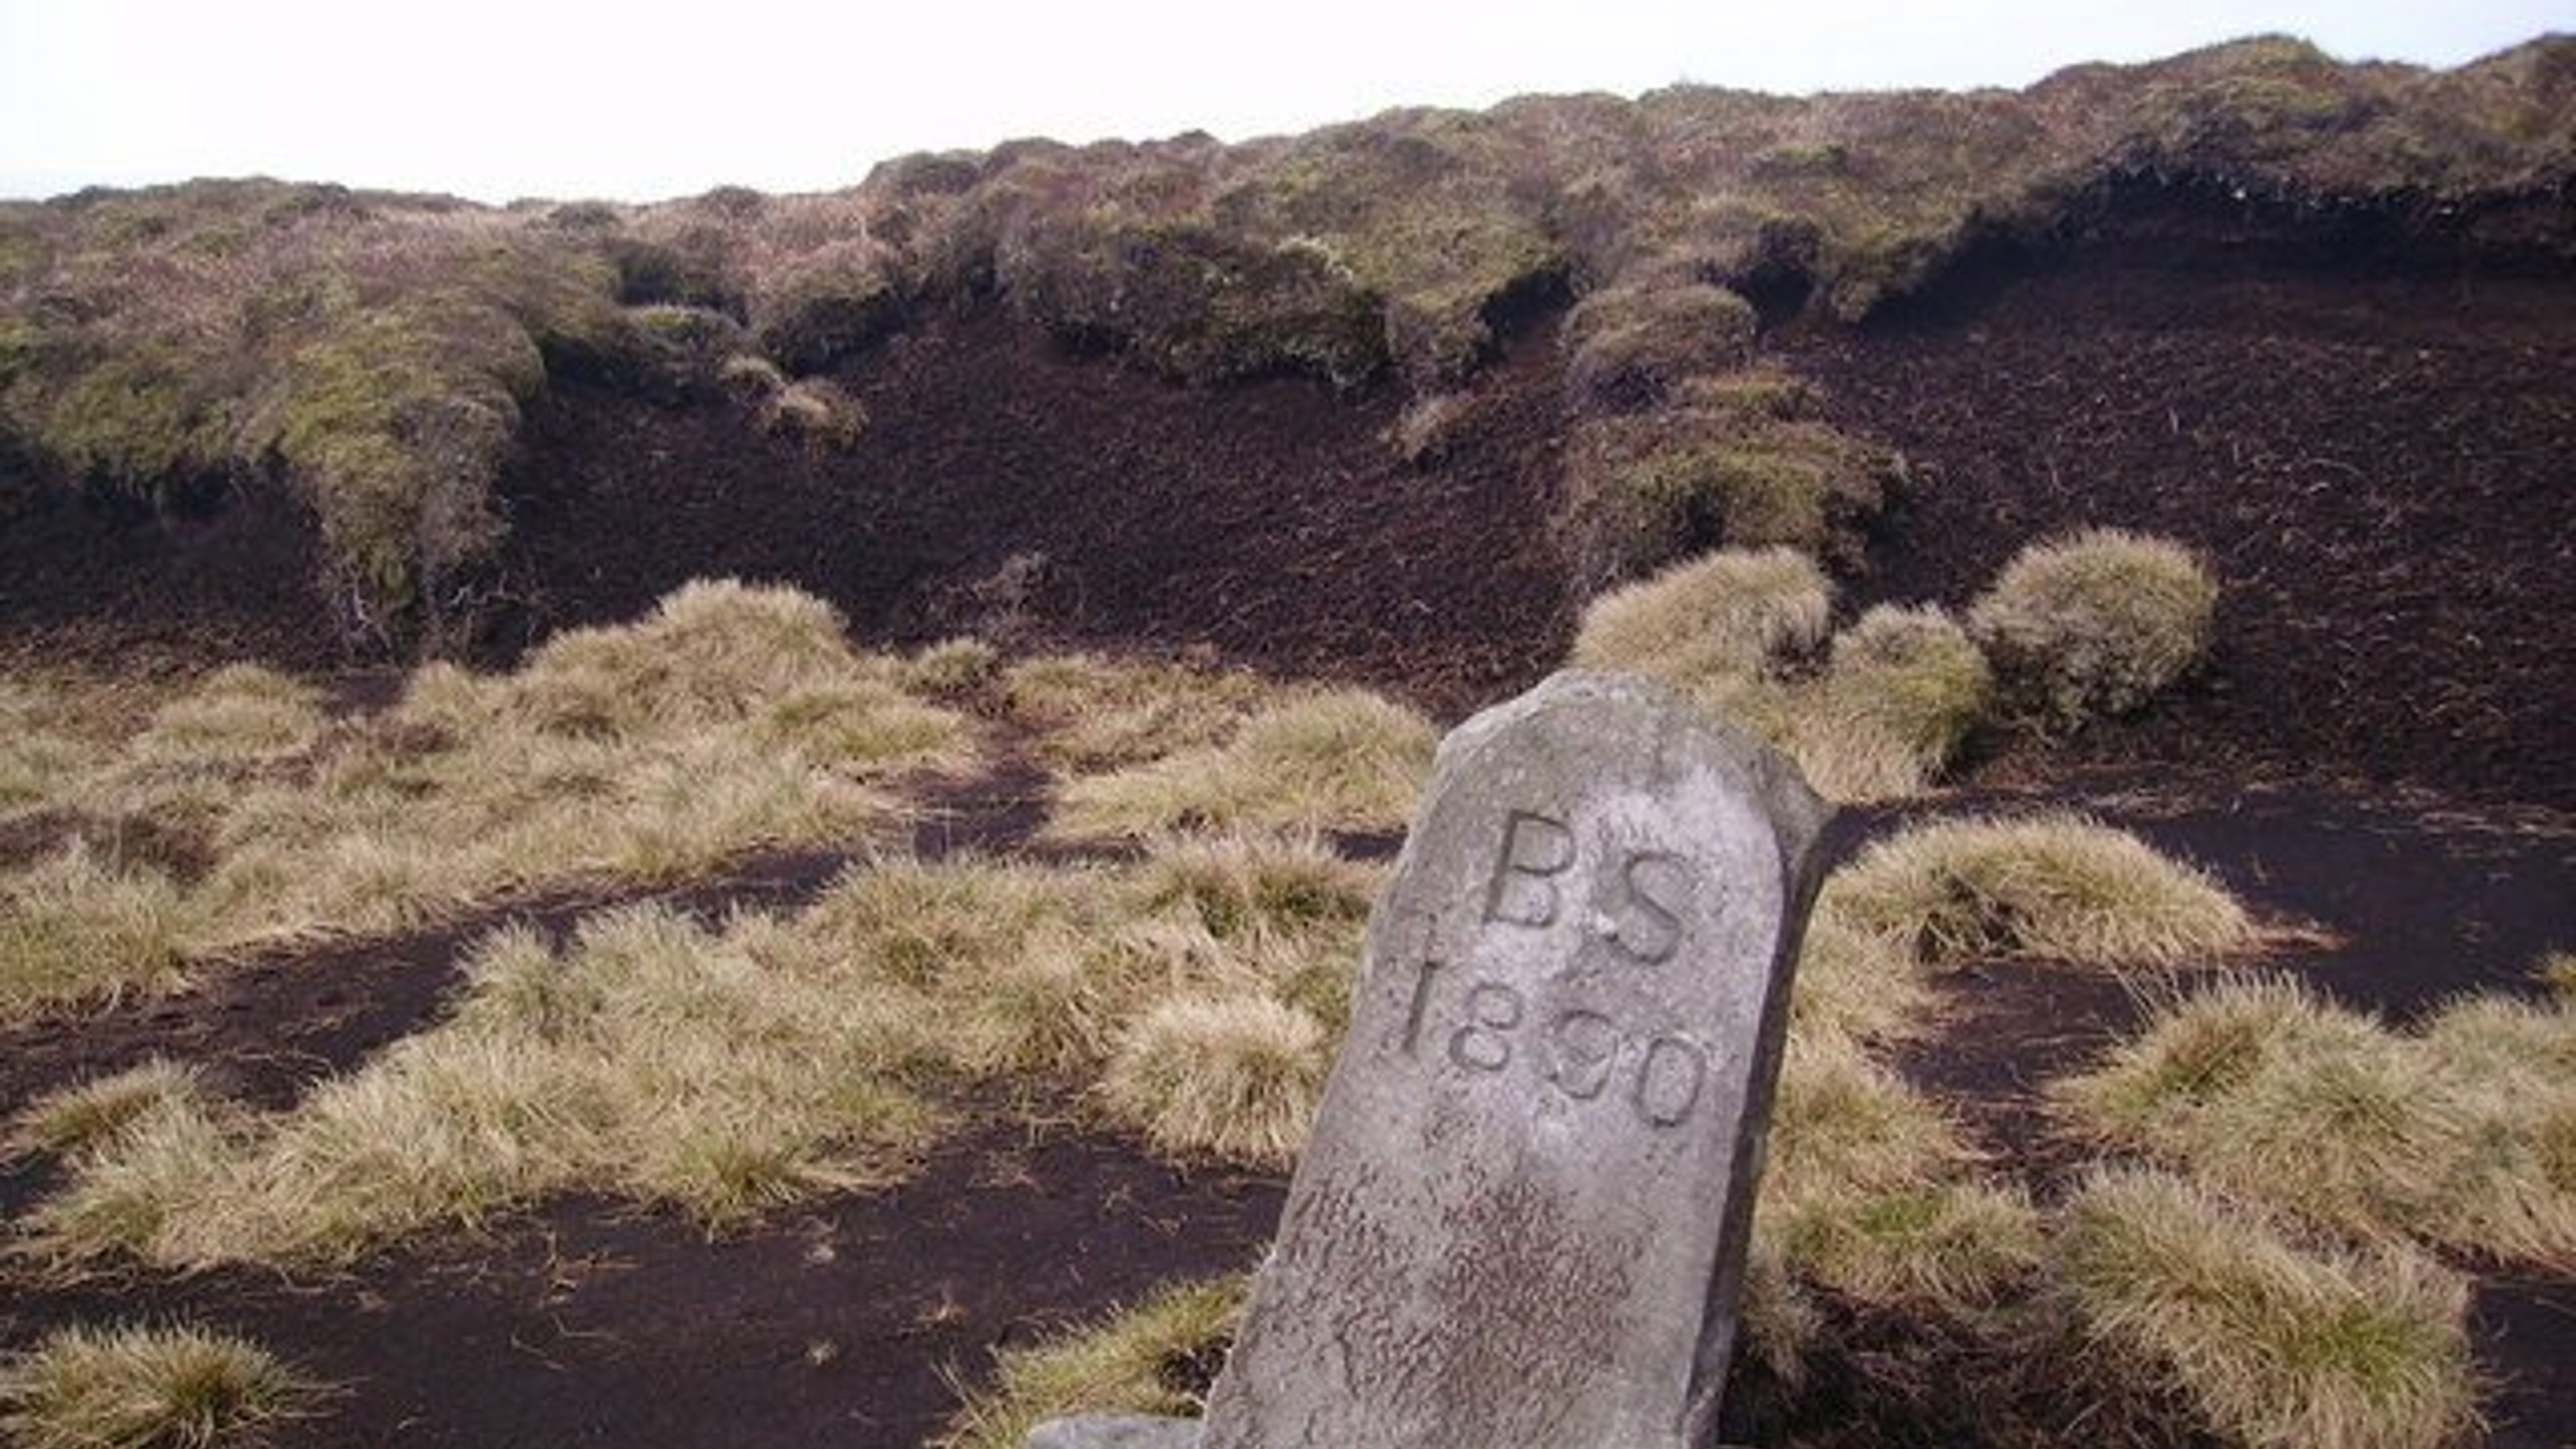 Ward's Stone - Lancashire 3 Peaks Hiking Challenge